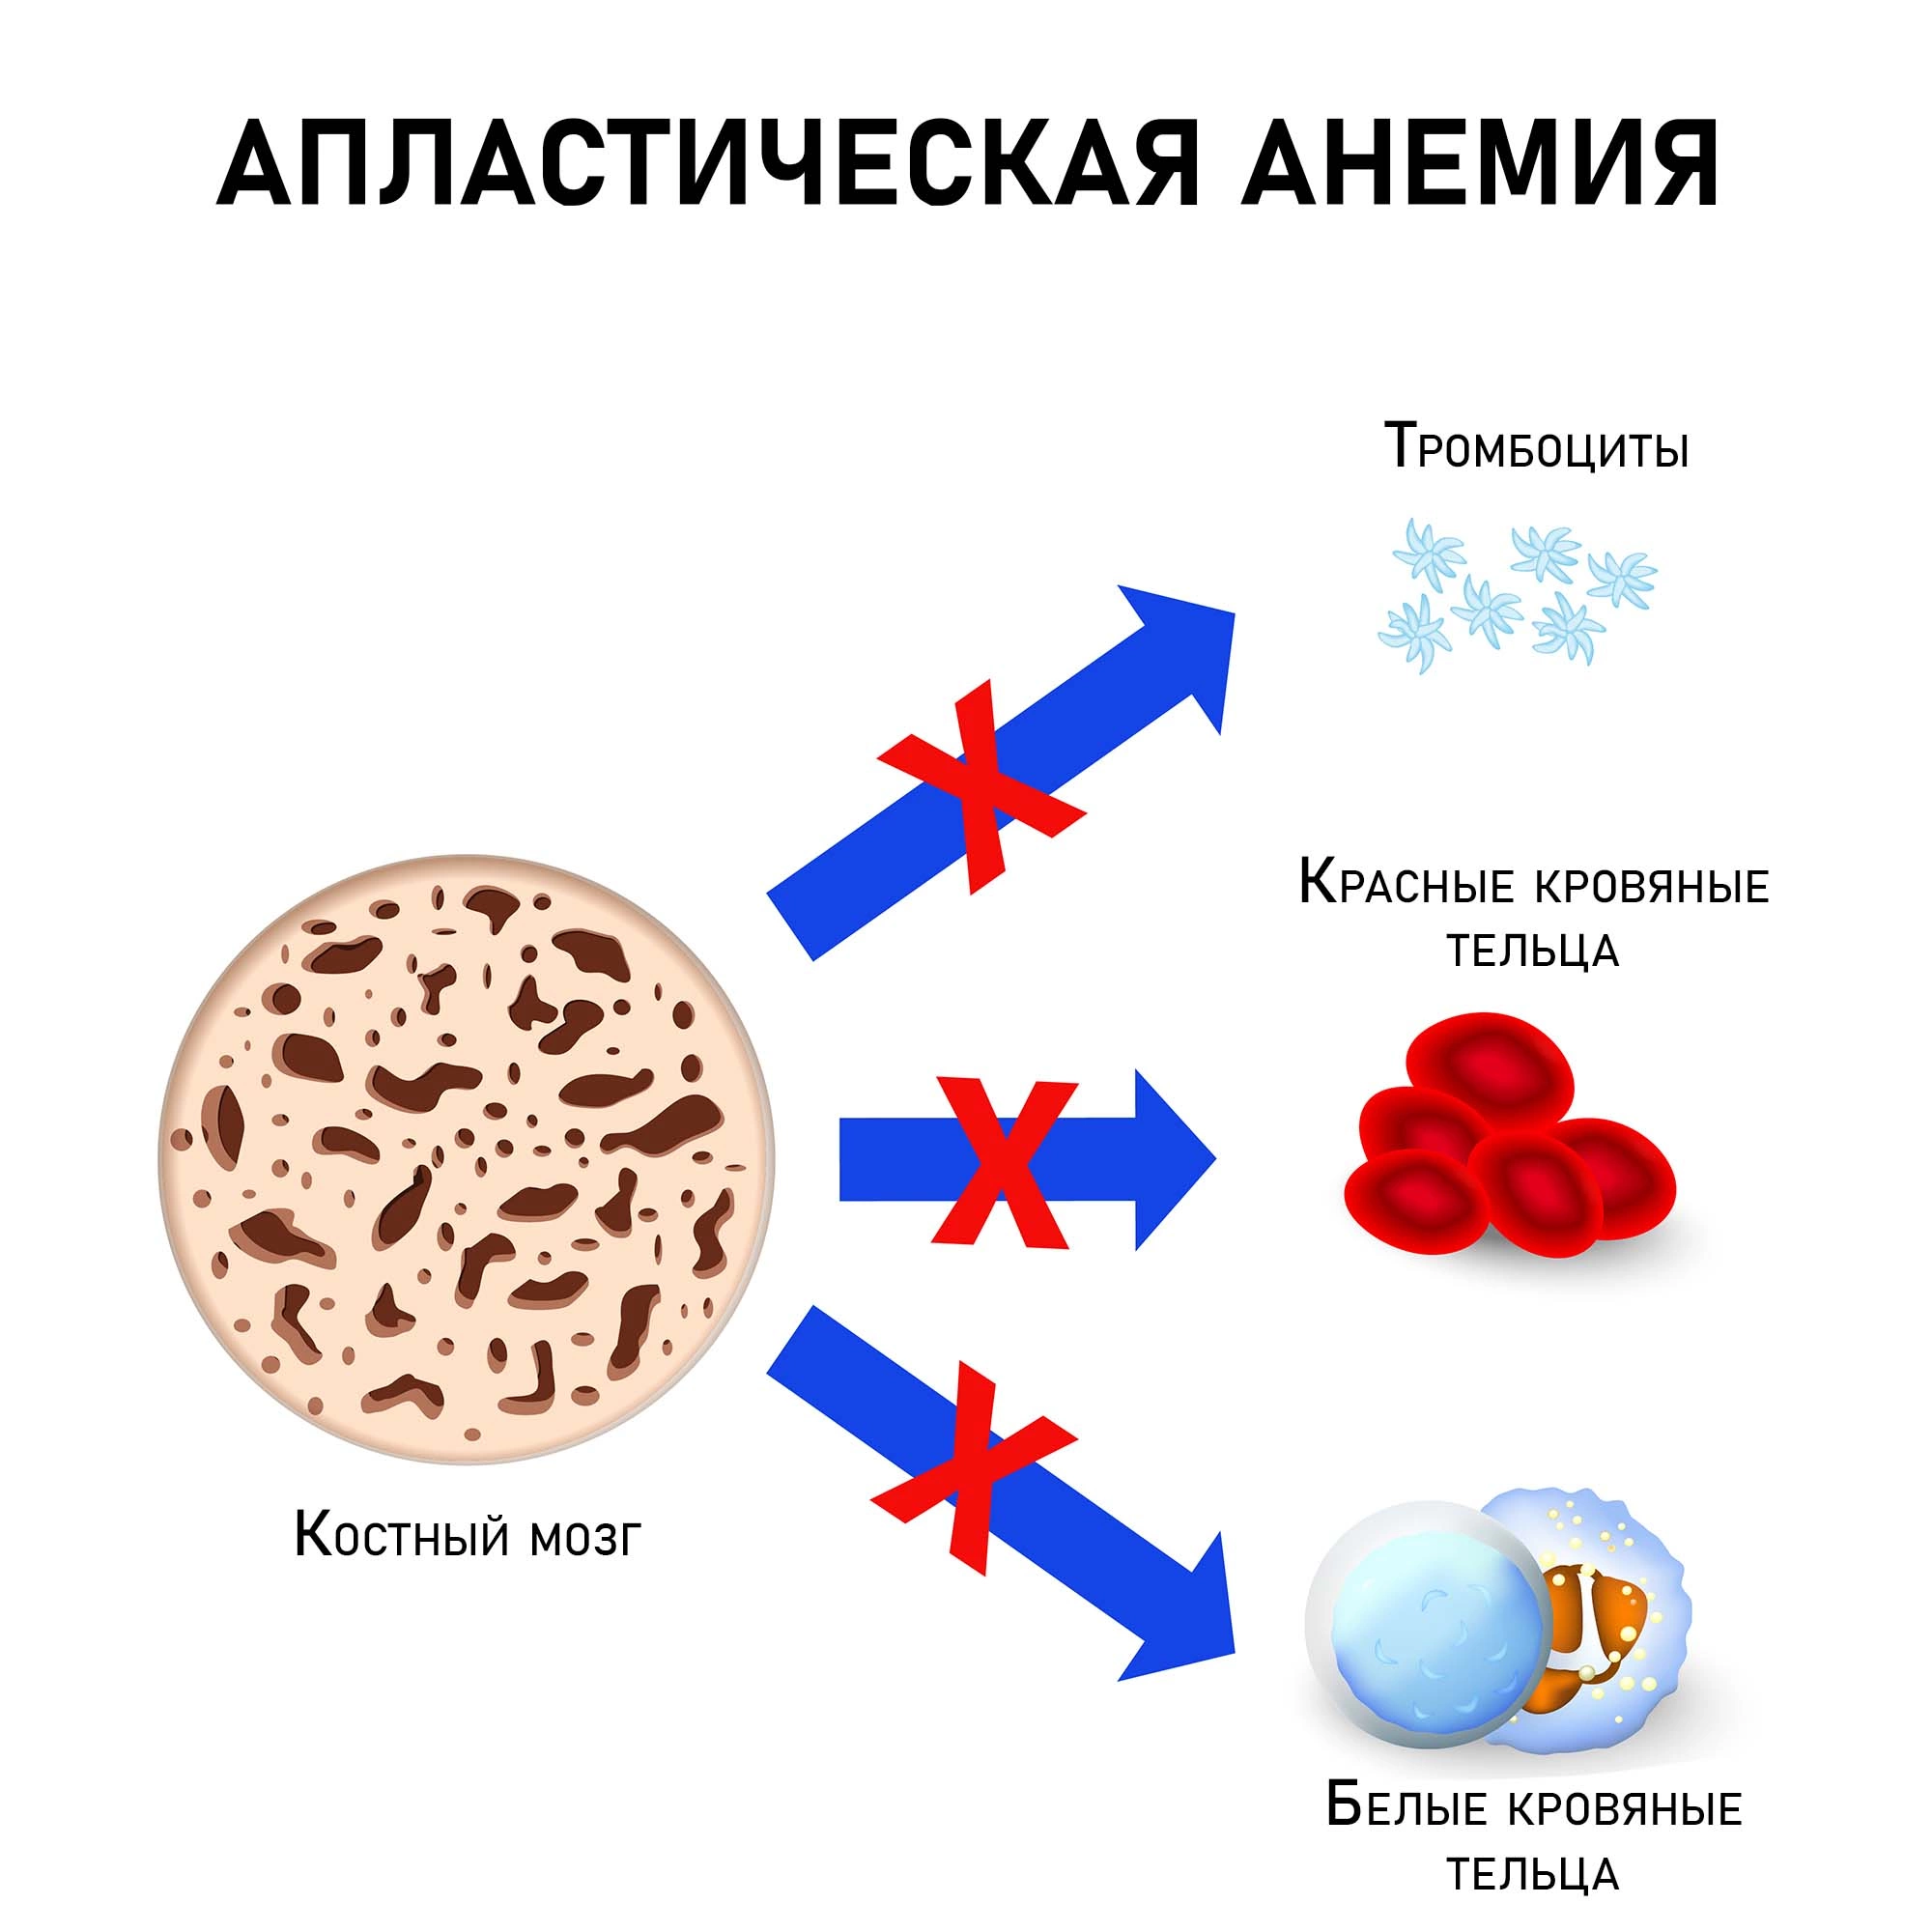 Апластическая анемия: причины, симптомы, классификация, диагностика, лечение